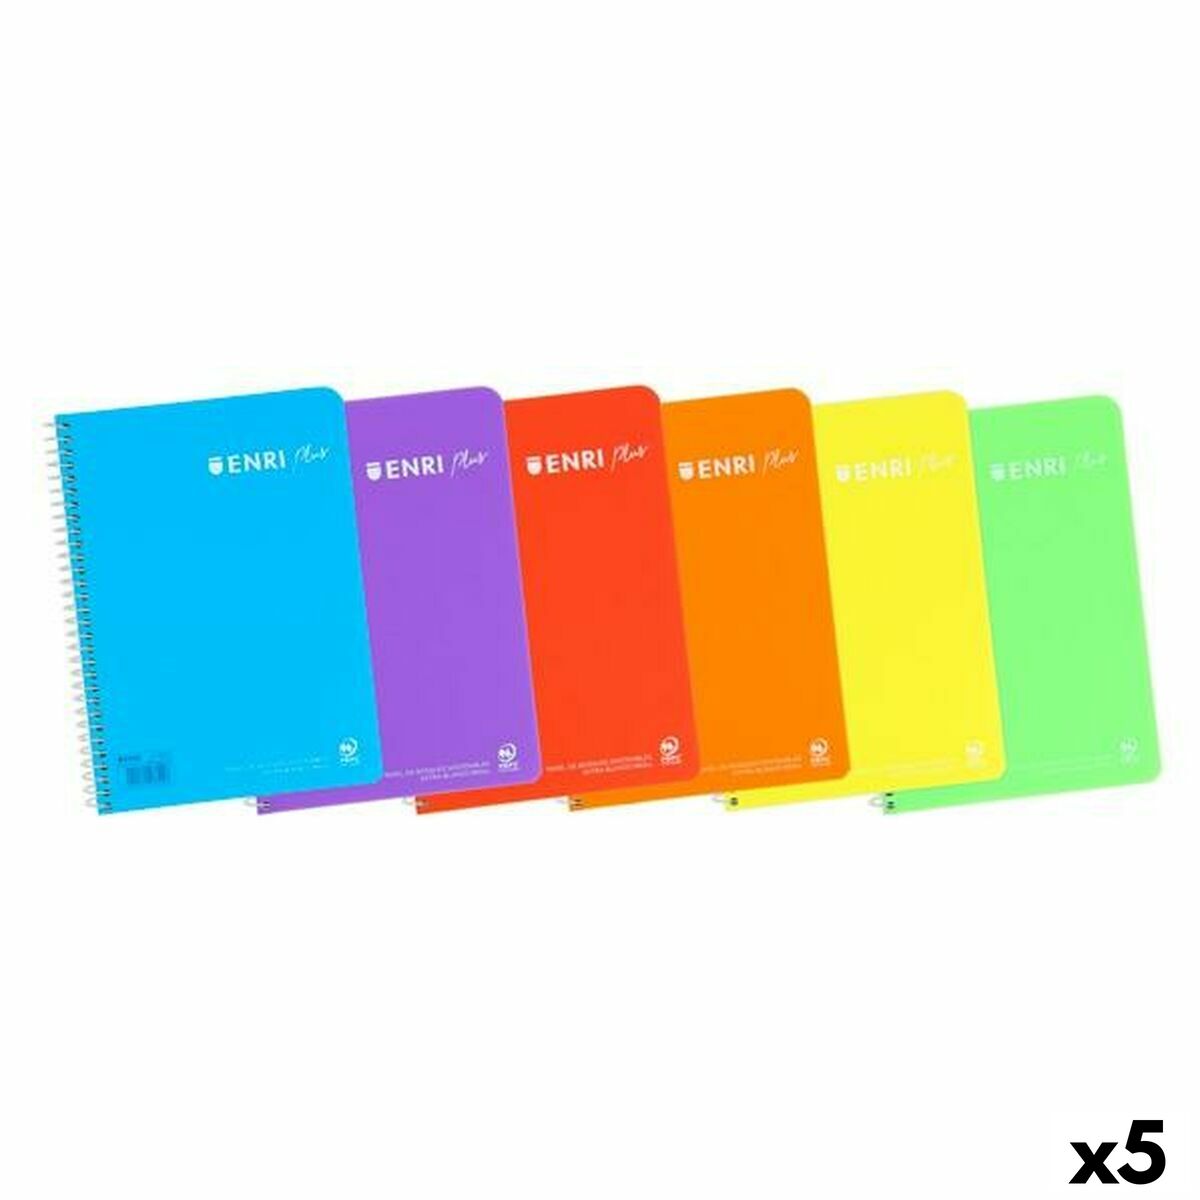 Notebook ENRI Multicolor 80 Frunze Din A4 (5 Unități)